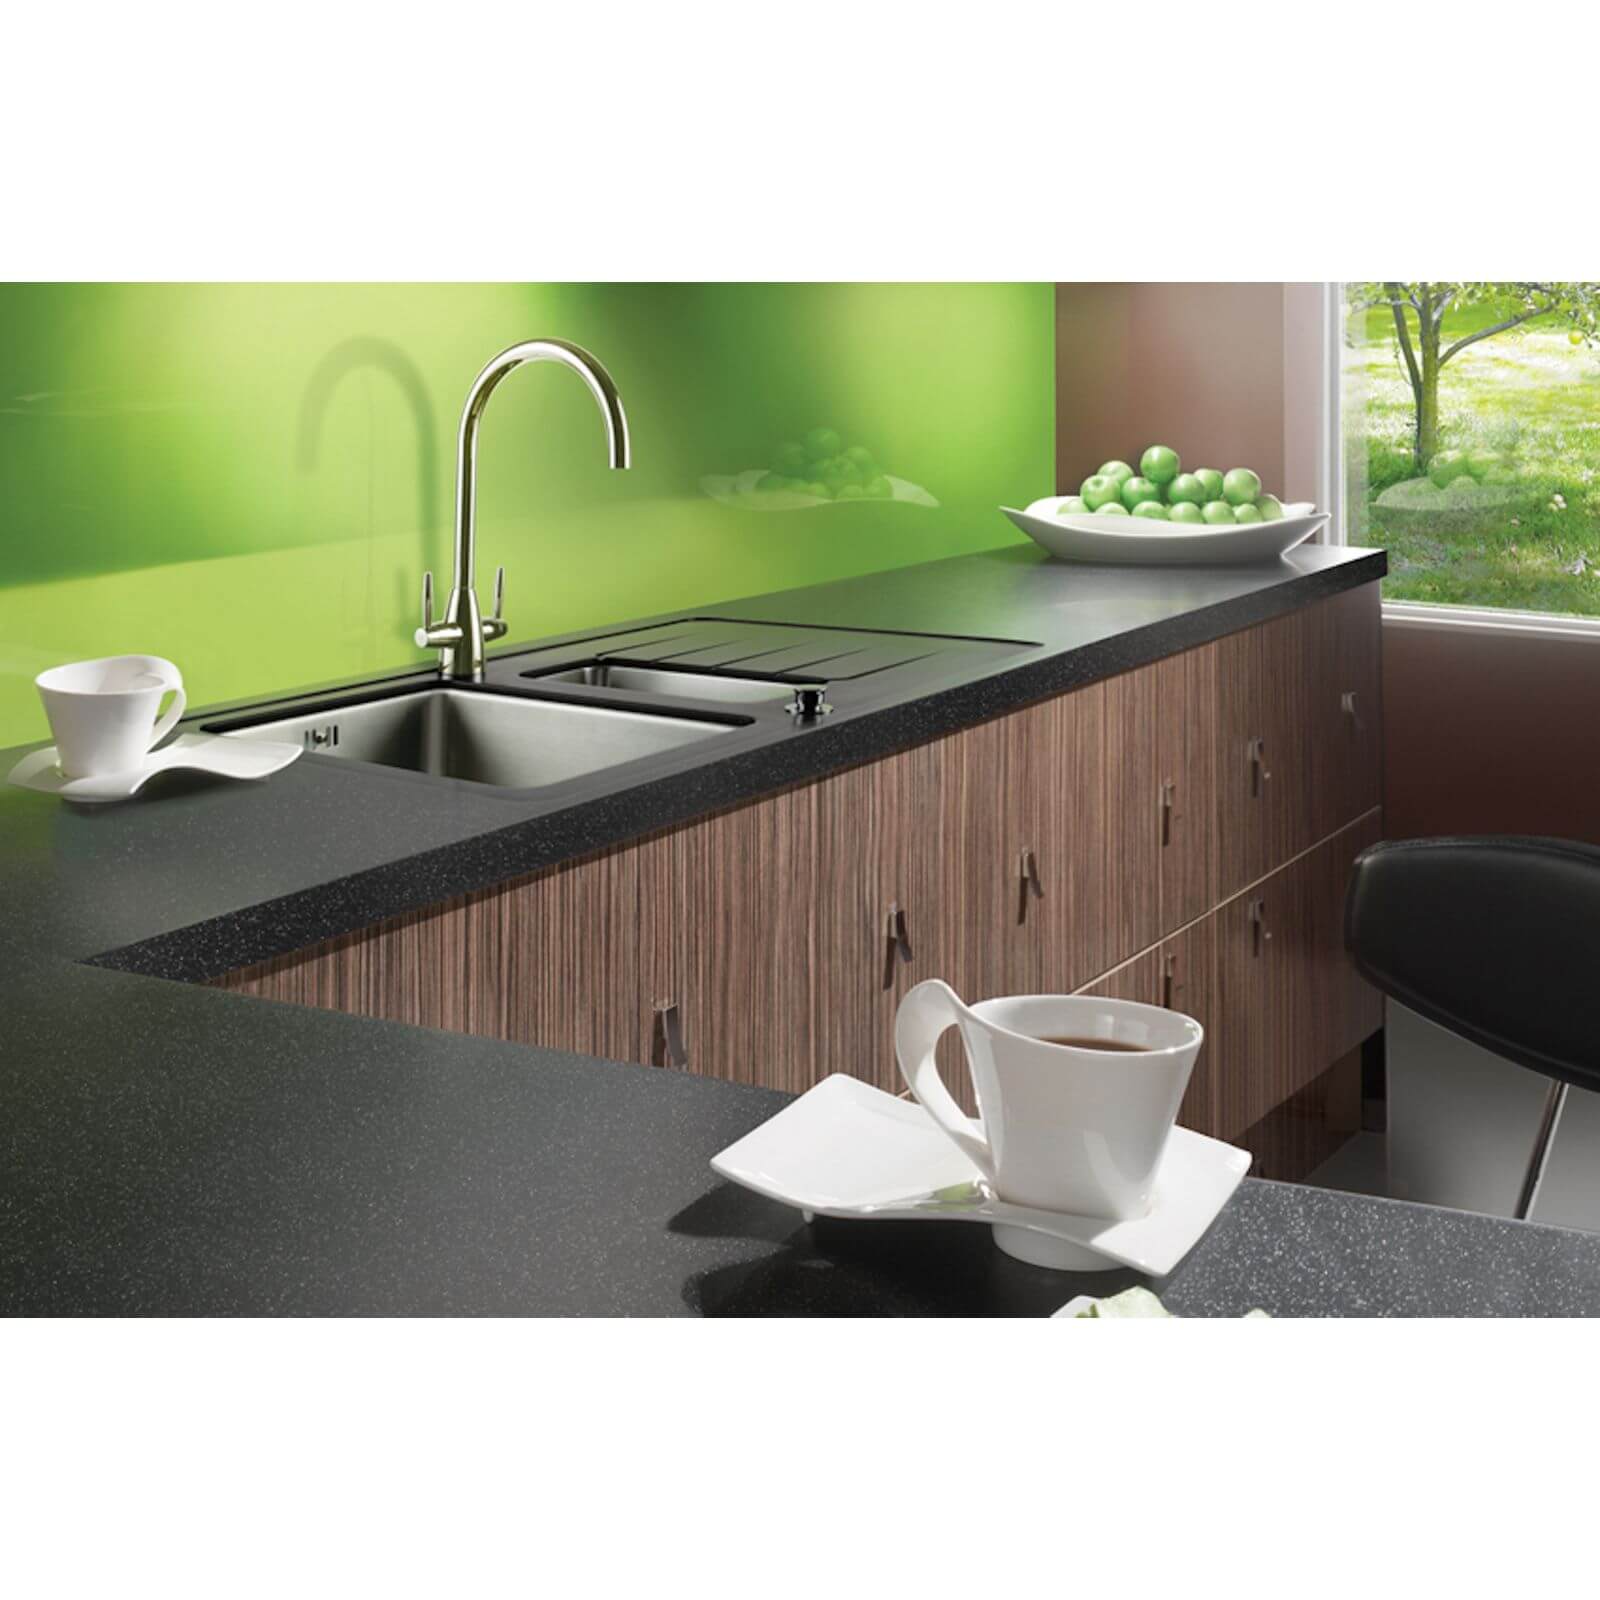 Maia Galaxy Kitchen Worktop R95 - 60 x 60 x 4.2cm